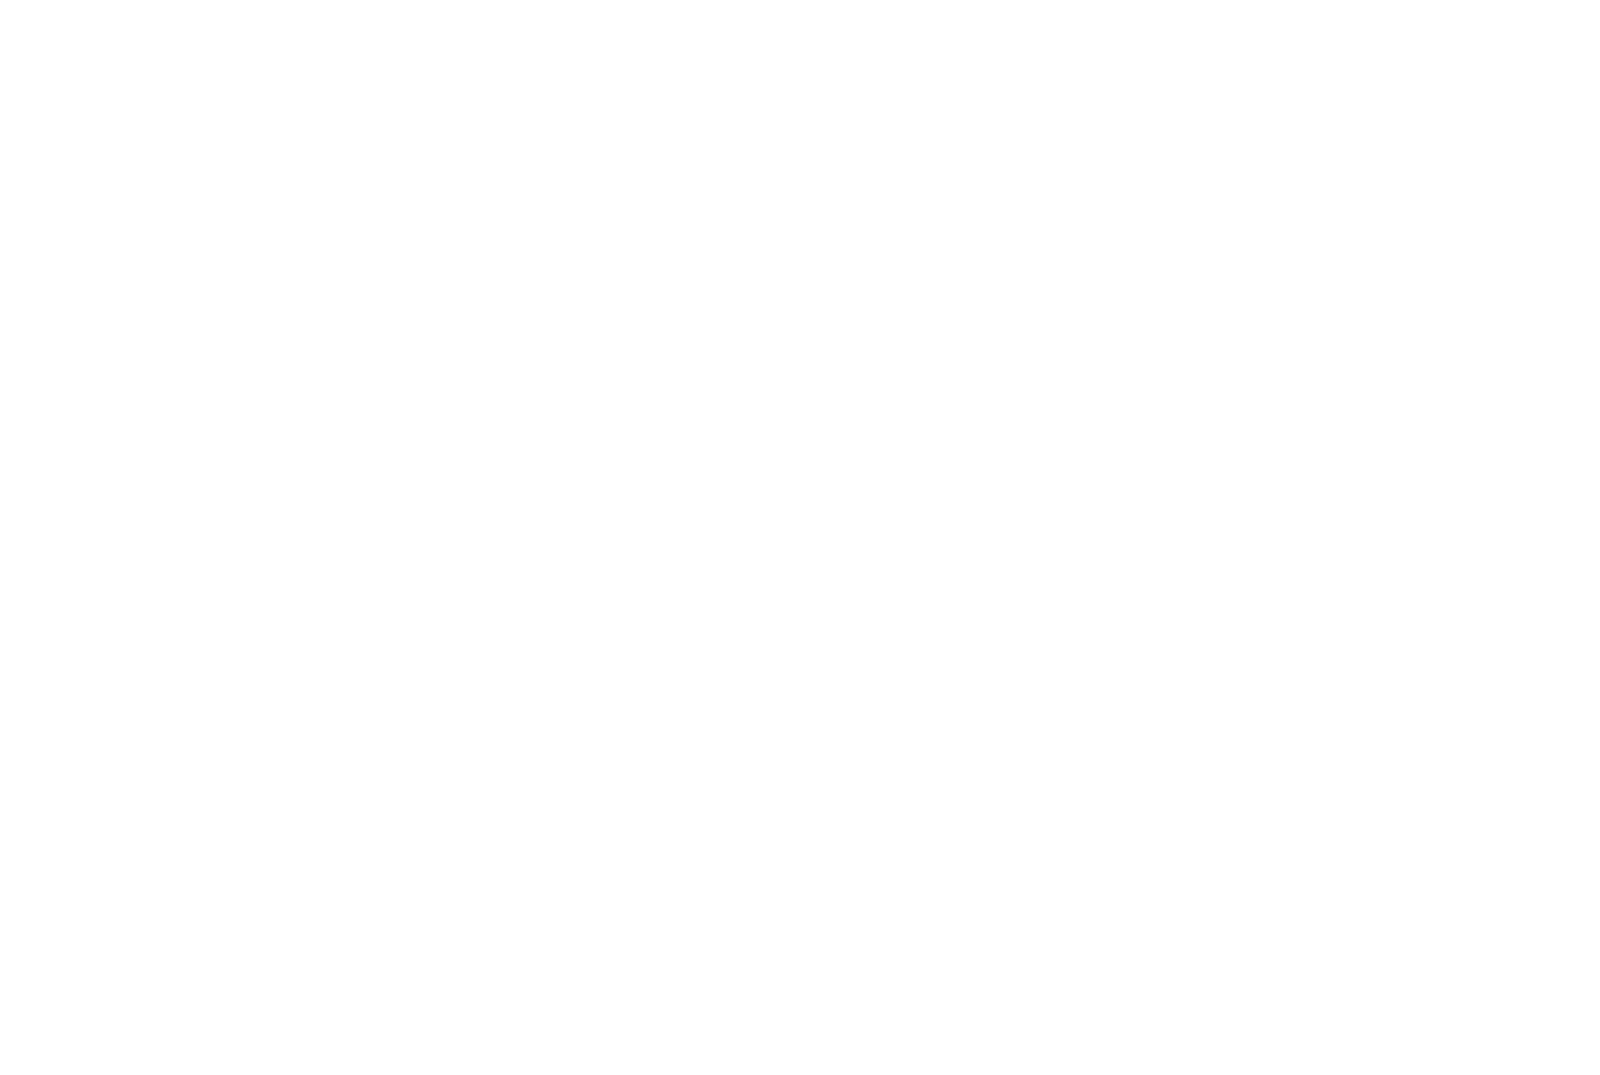 ディーン・フジオカが桂木淳一役で出演する映画『坂道のアポロン』の特報が解禁サムネイル画像!